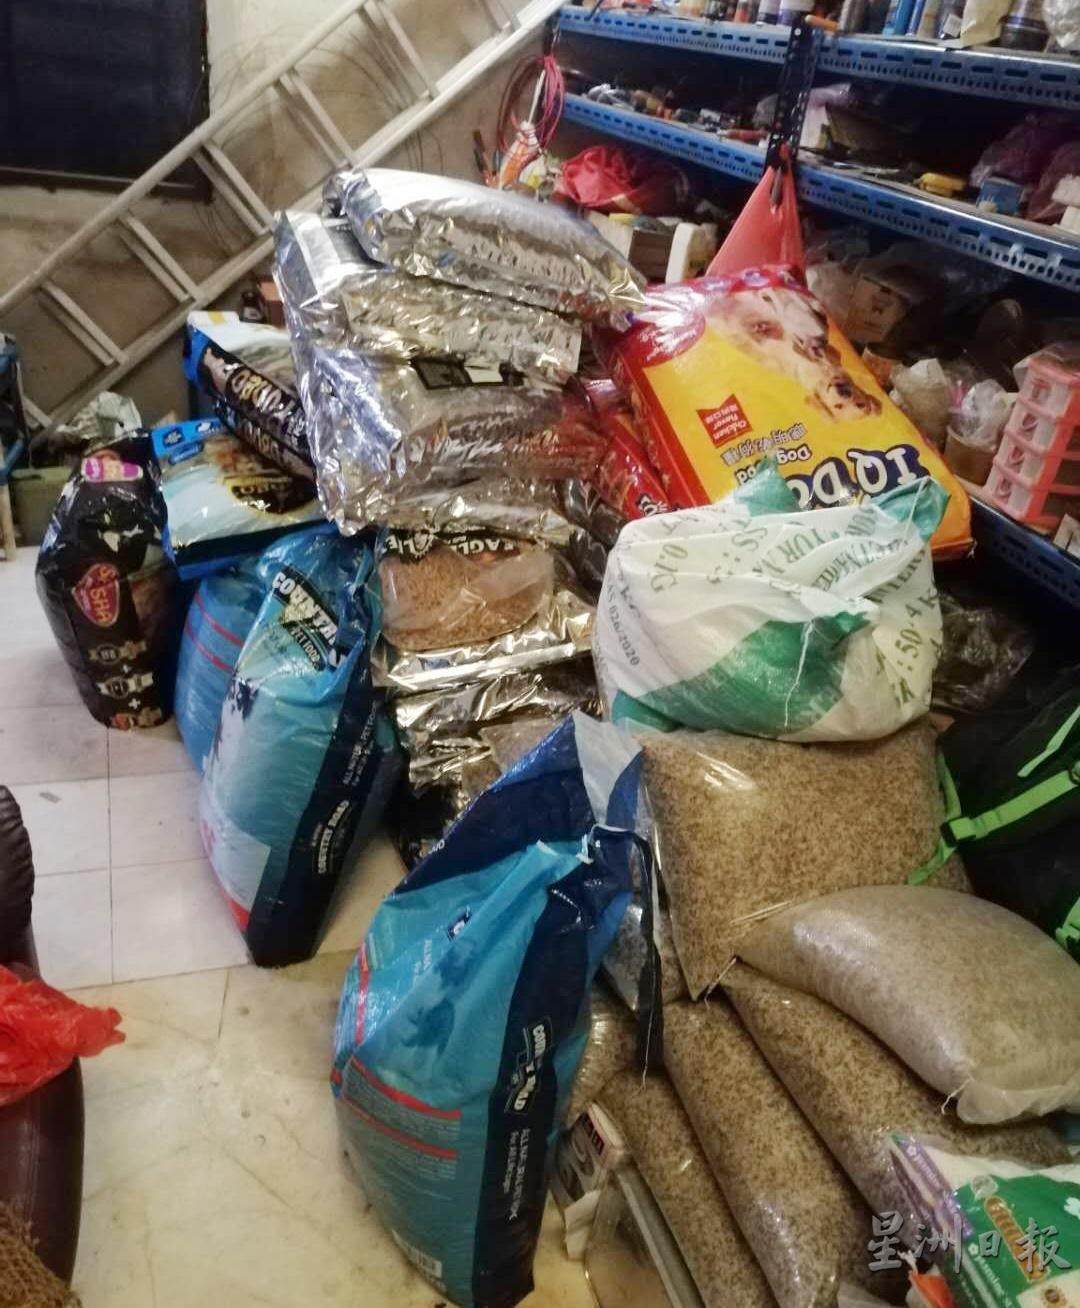 米克斯犬猫之家的粮食储备只足够应付大概3星期的需求。

